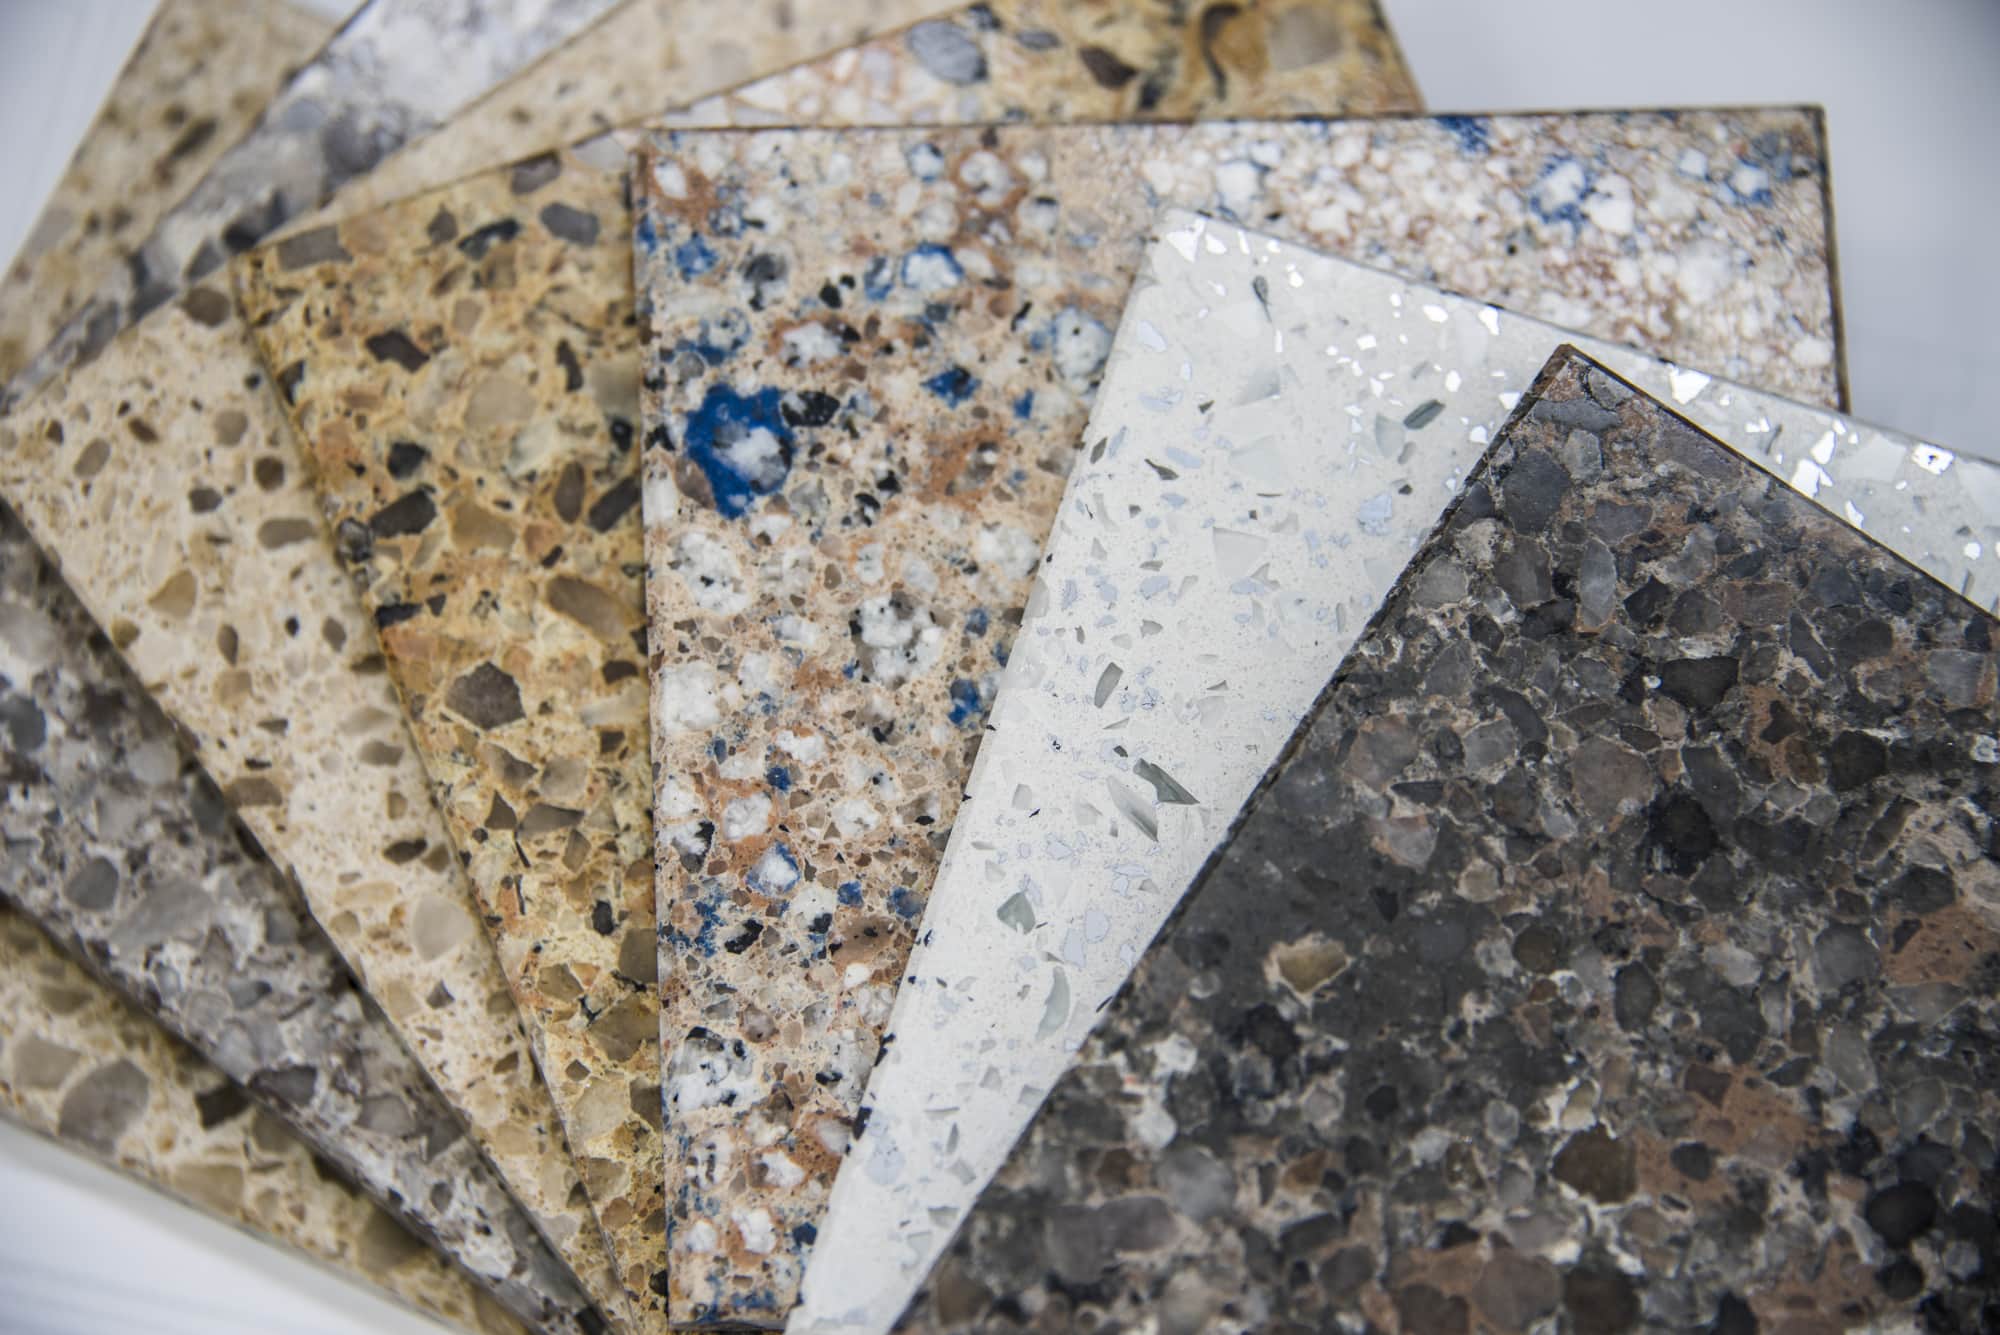 Granite and quartz in Miami